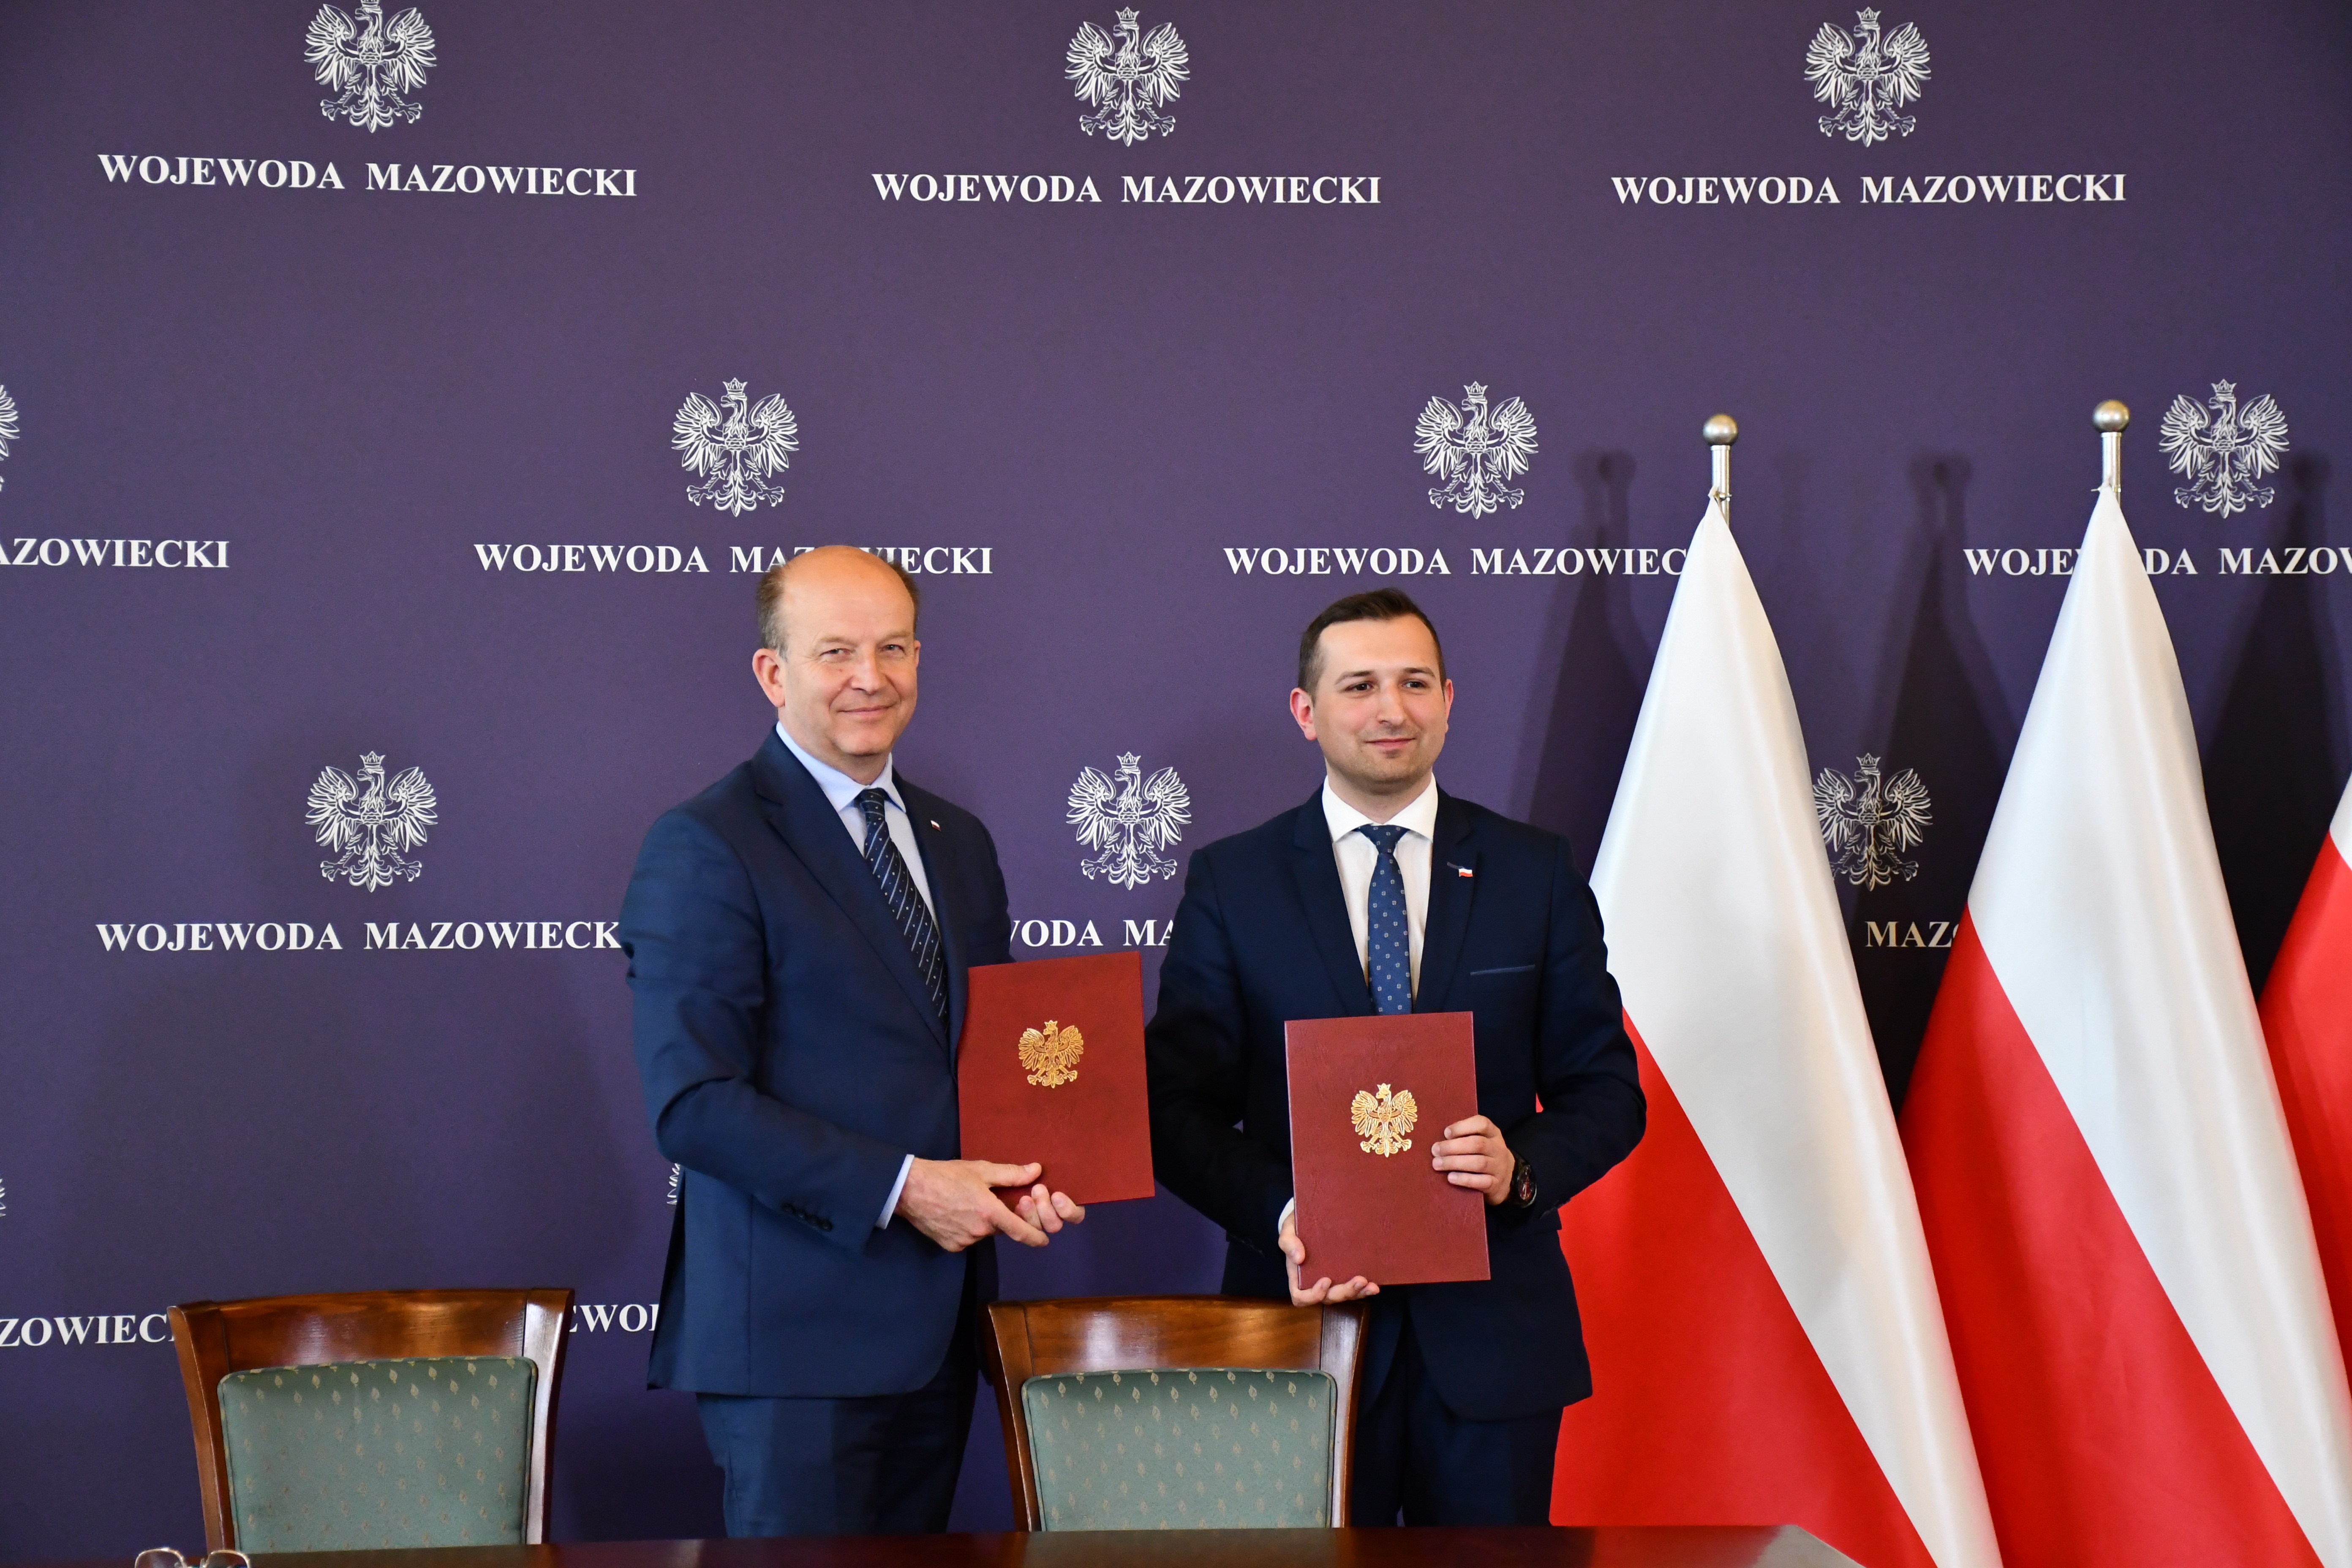 Podpisanie umowy w Mazowieckim Urzędzie Wojewódzkim w Warszawie